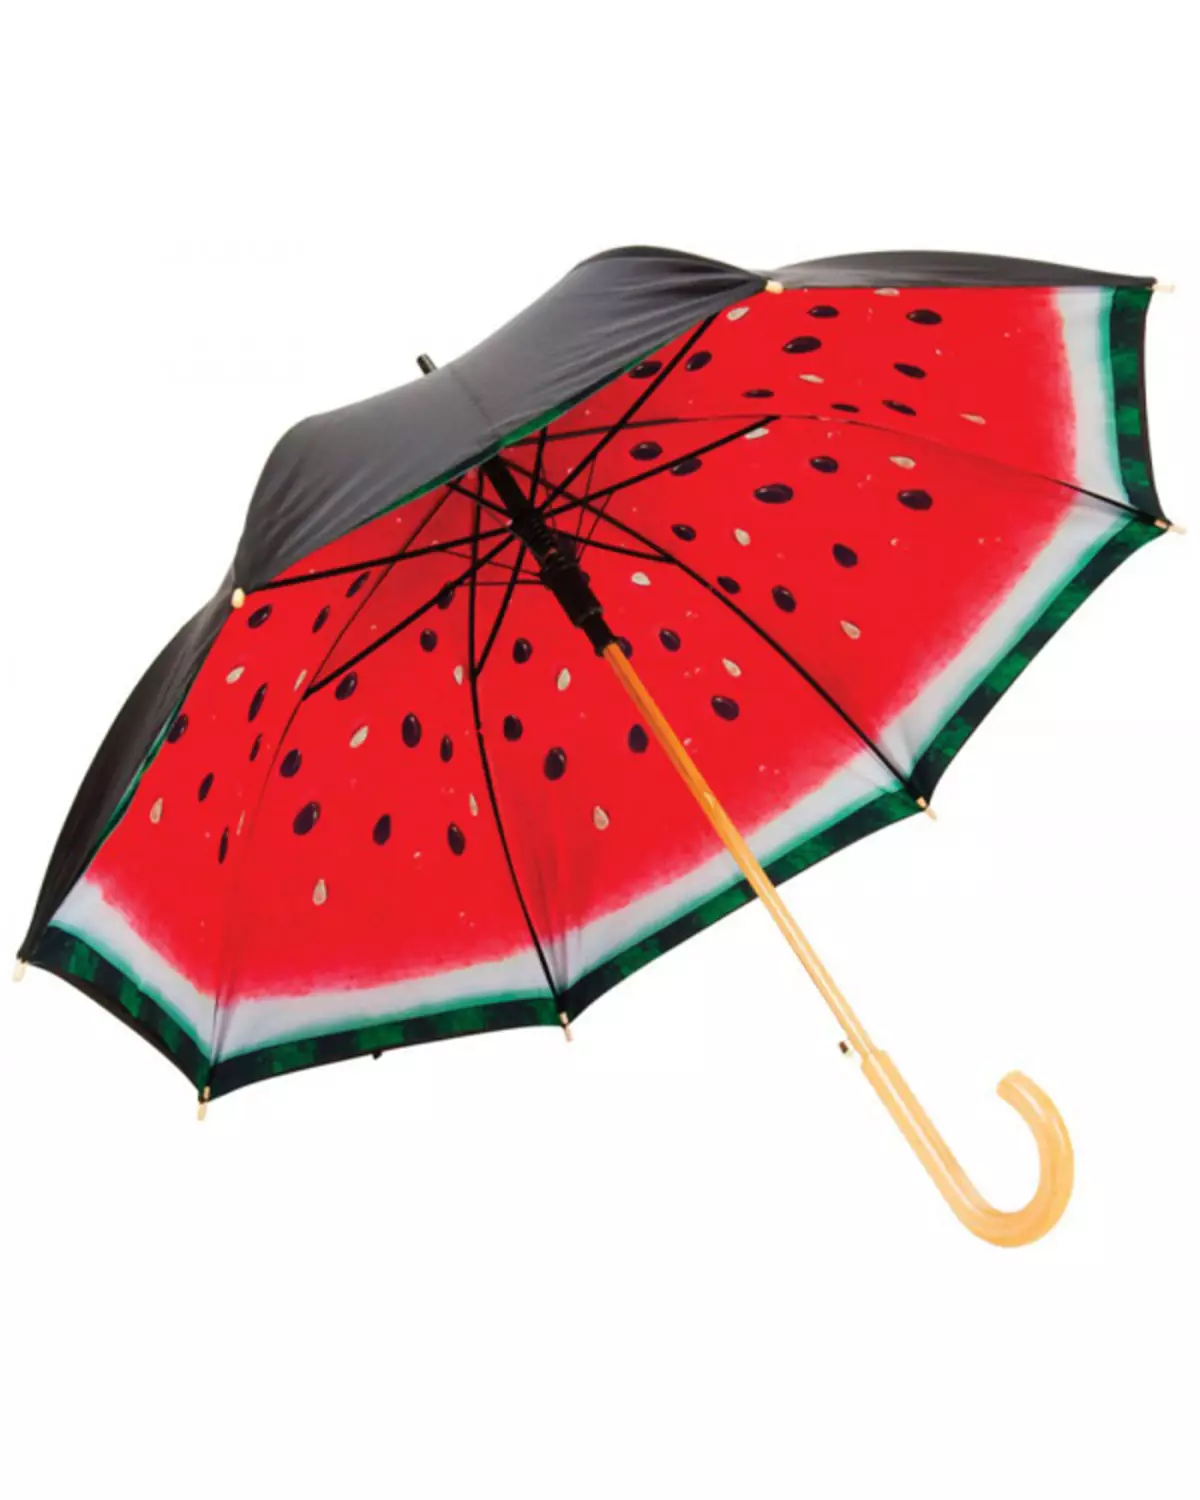 Sunbrella (linepe tse 72): Basali ba bopalai ba purwork upbrella-cane 15238_51